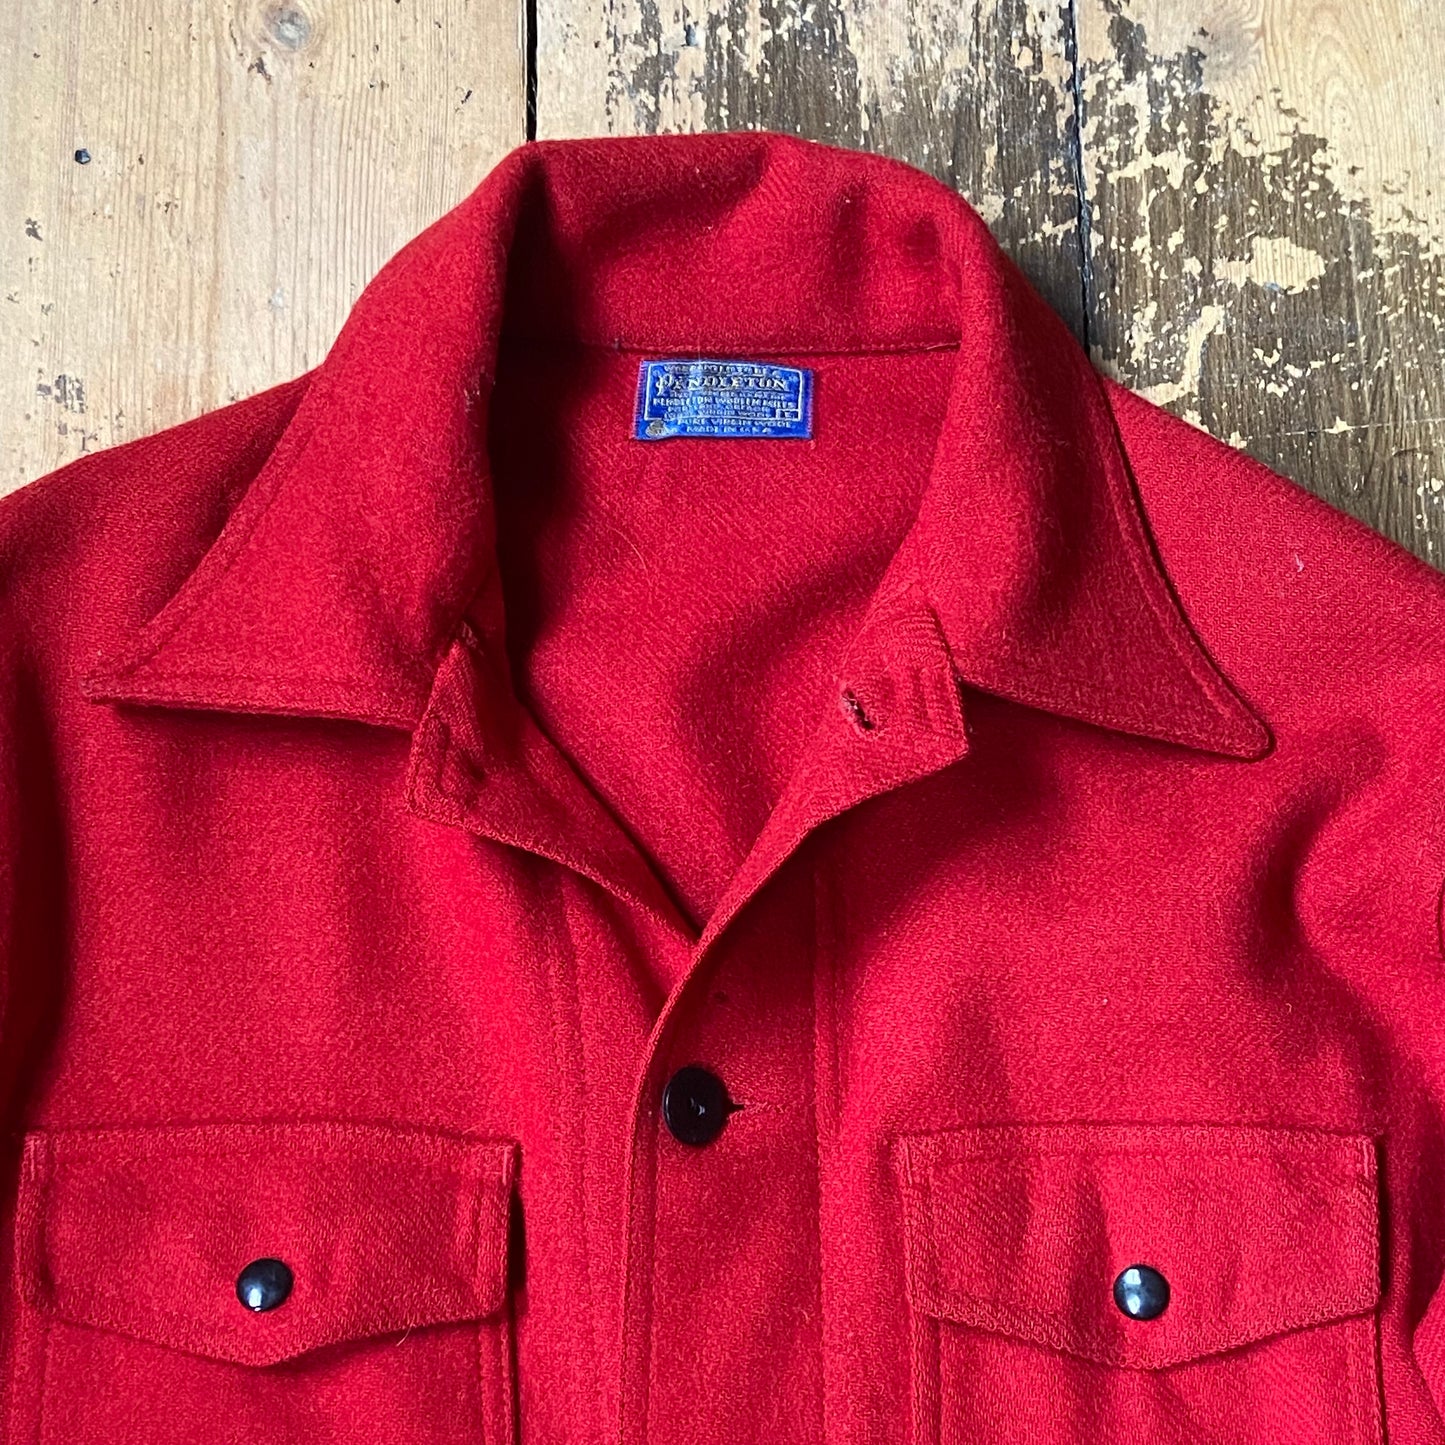 1970s Pendleton shirt jacket size large